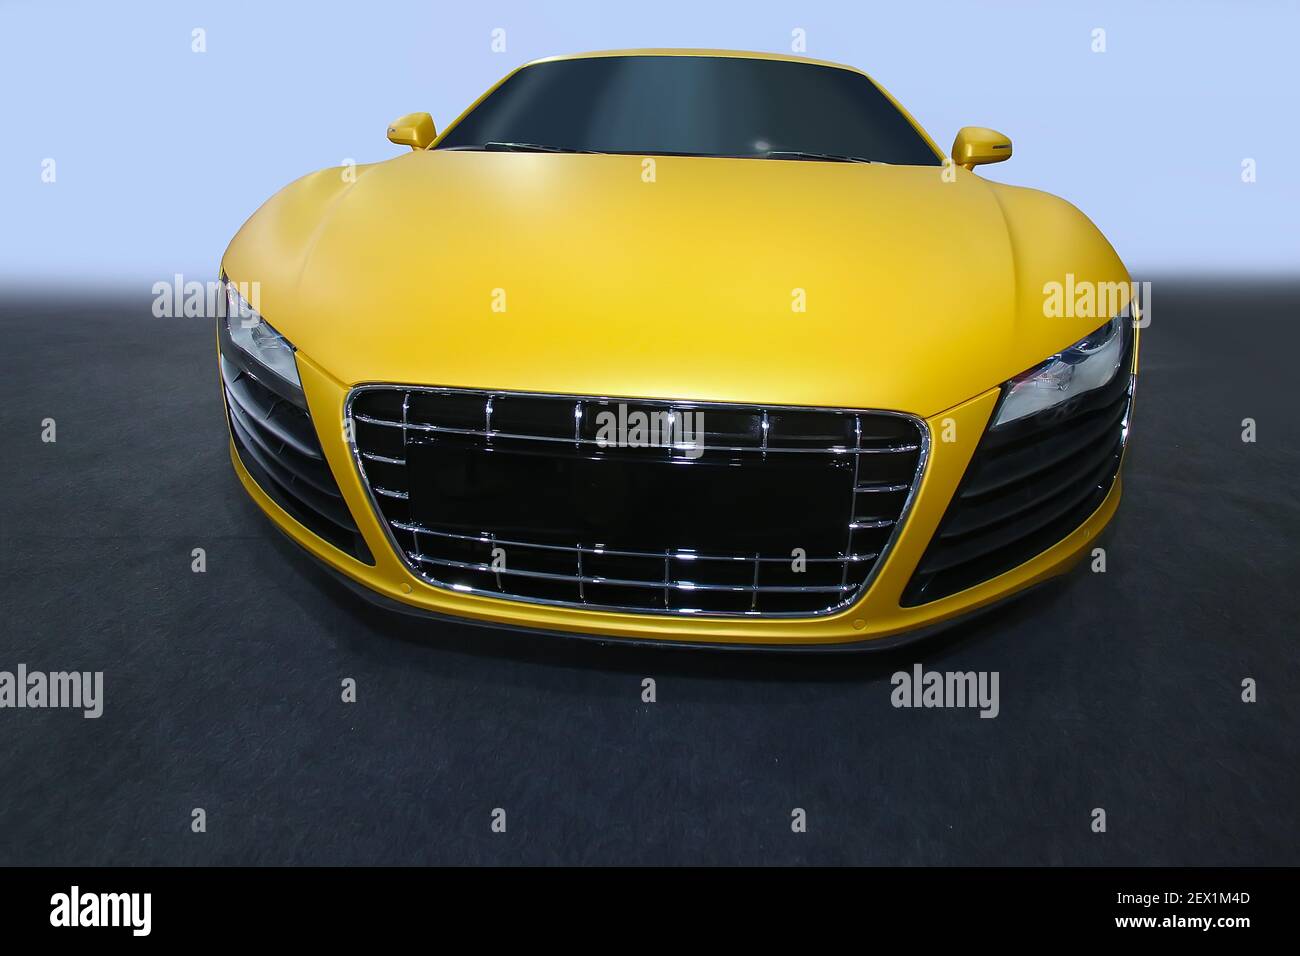 beautiful modern yellow sports car Stock Photo